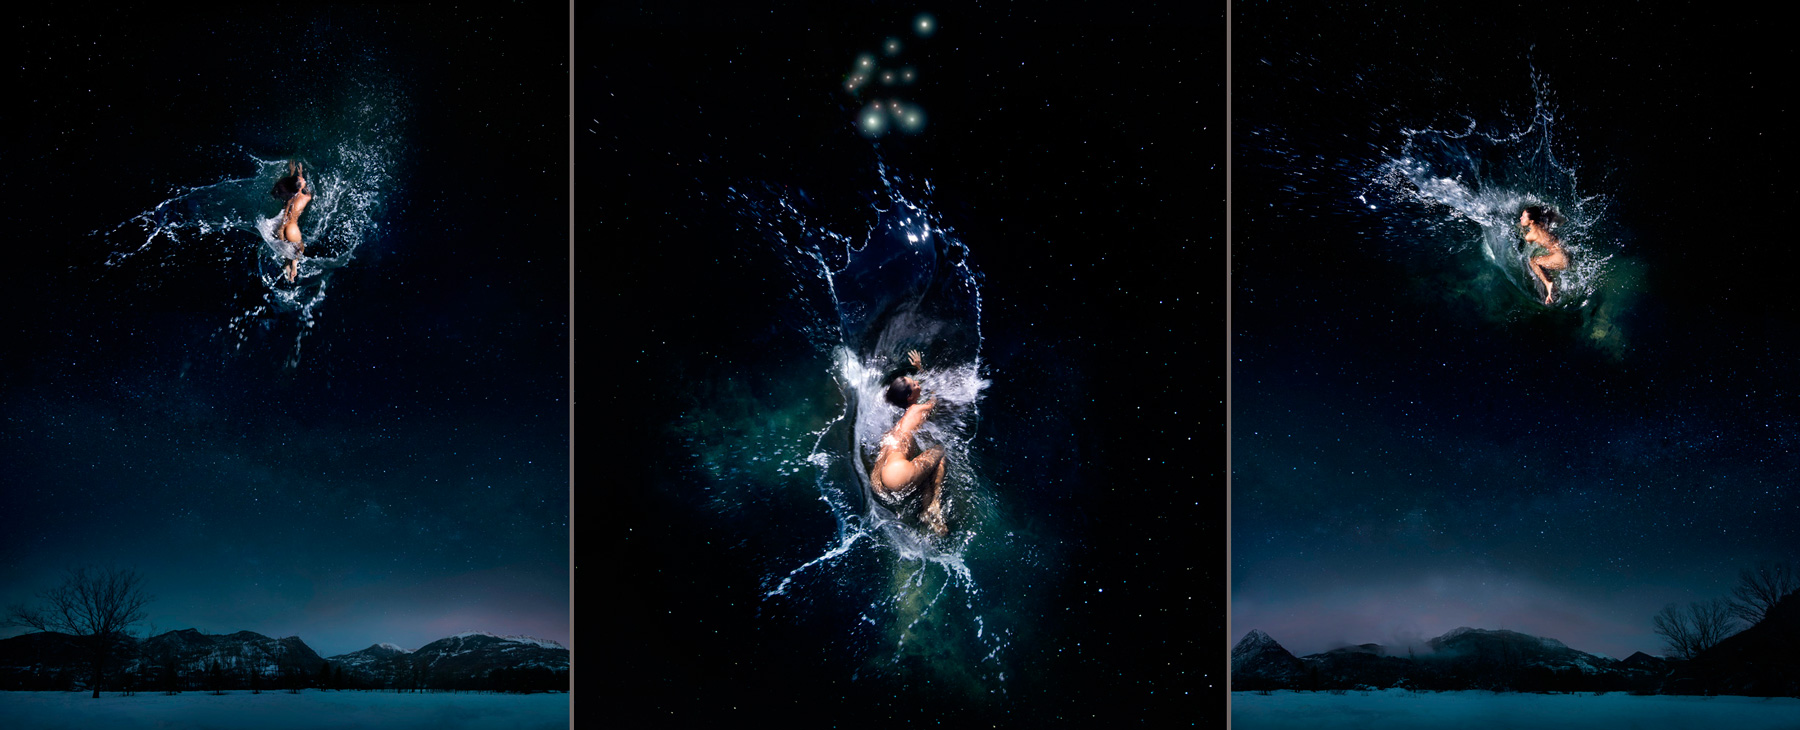 EUFONÍA de la Constelación de ACUARIO. Fotografía digital nocturna y acuática. Configuración y retoque digitales